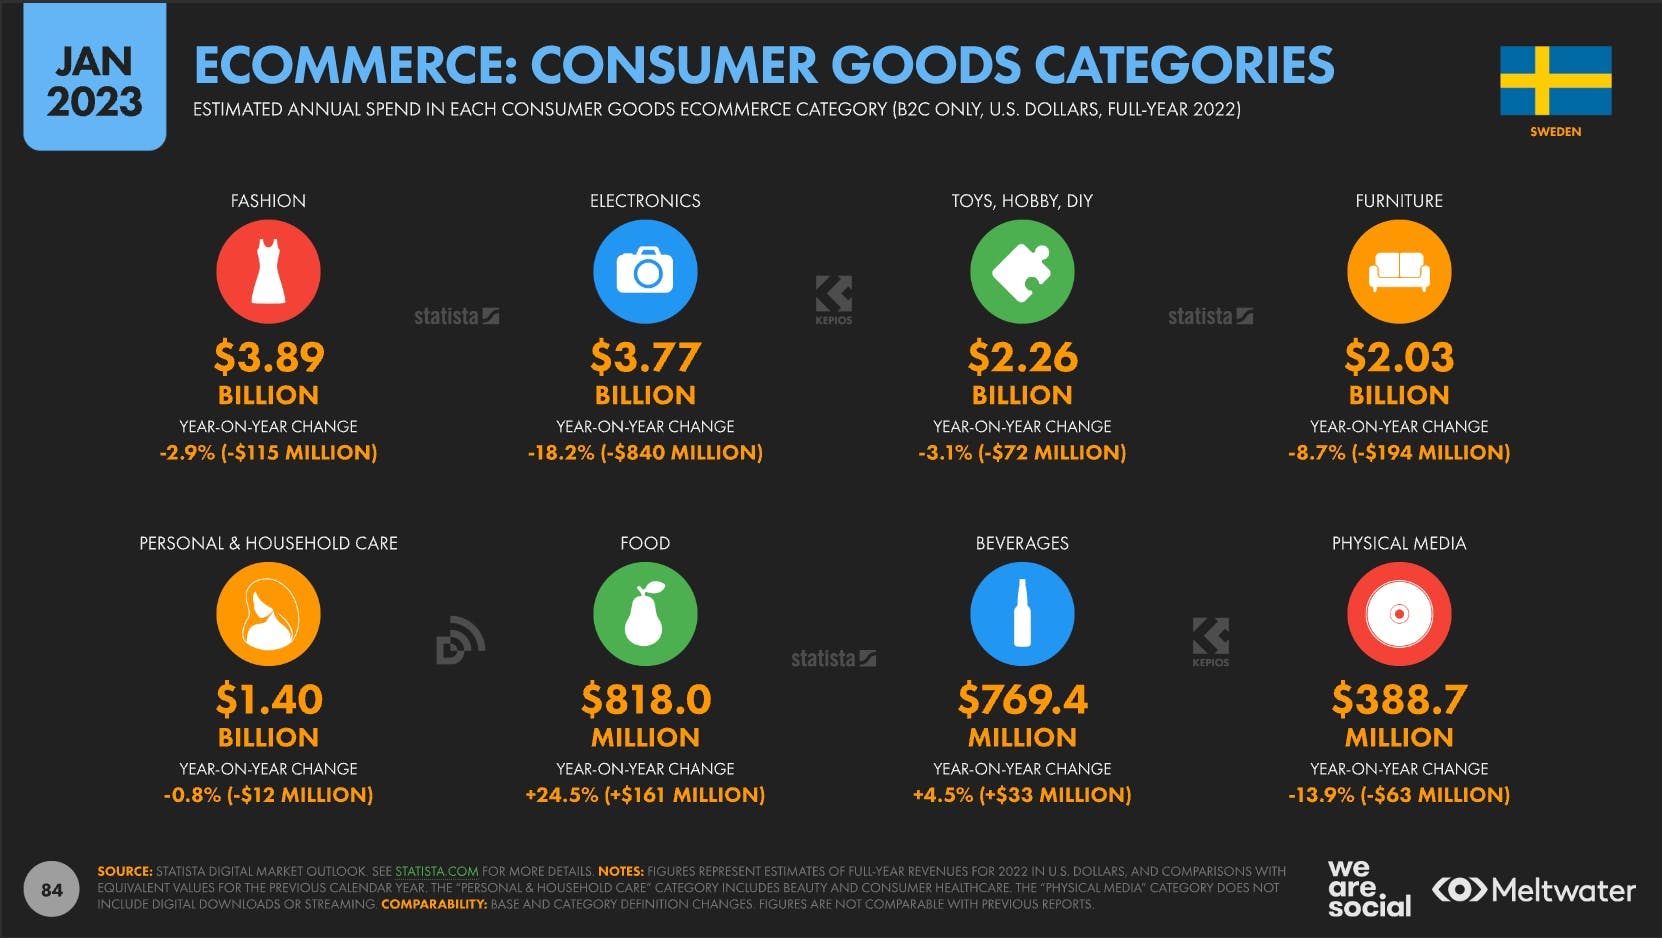 Ecommerce consumer goods categories in Sweden - statistics